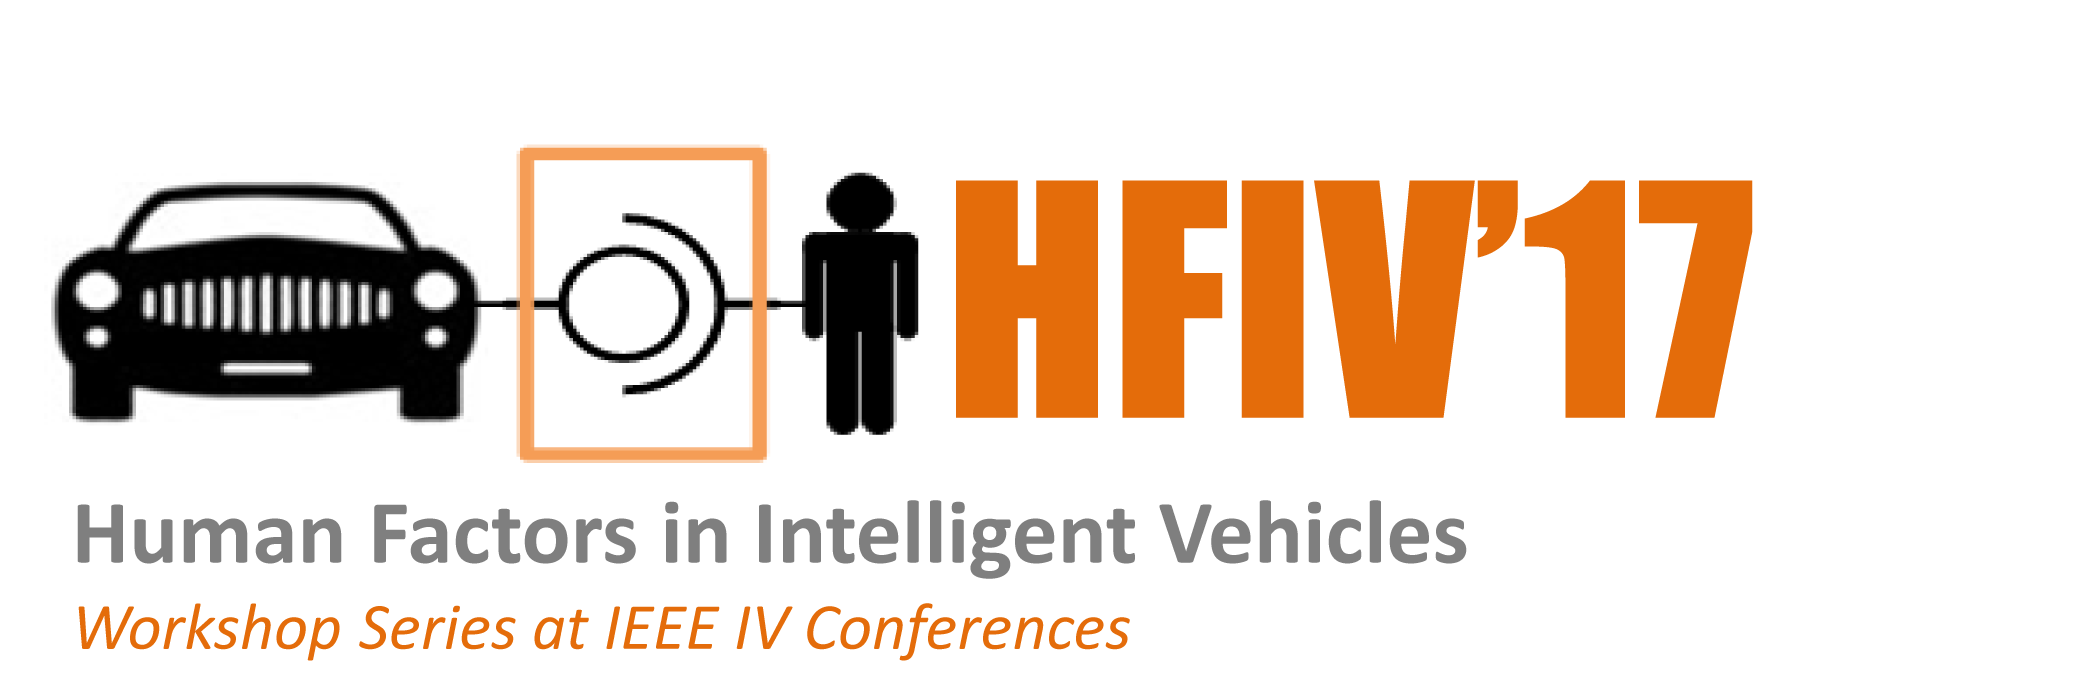 HFIV17 logo